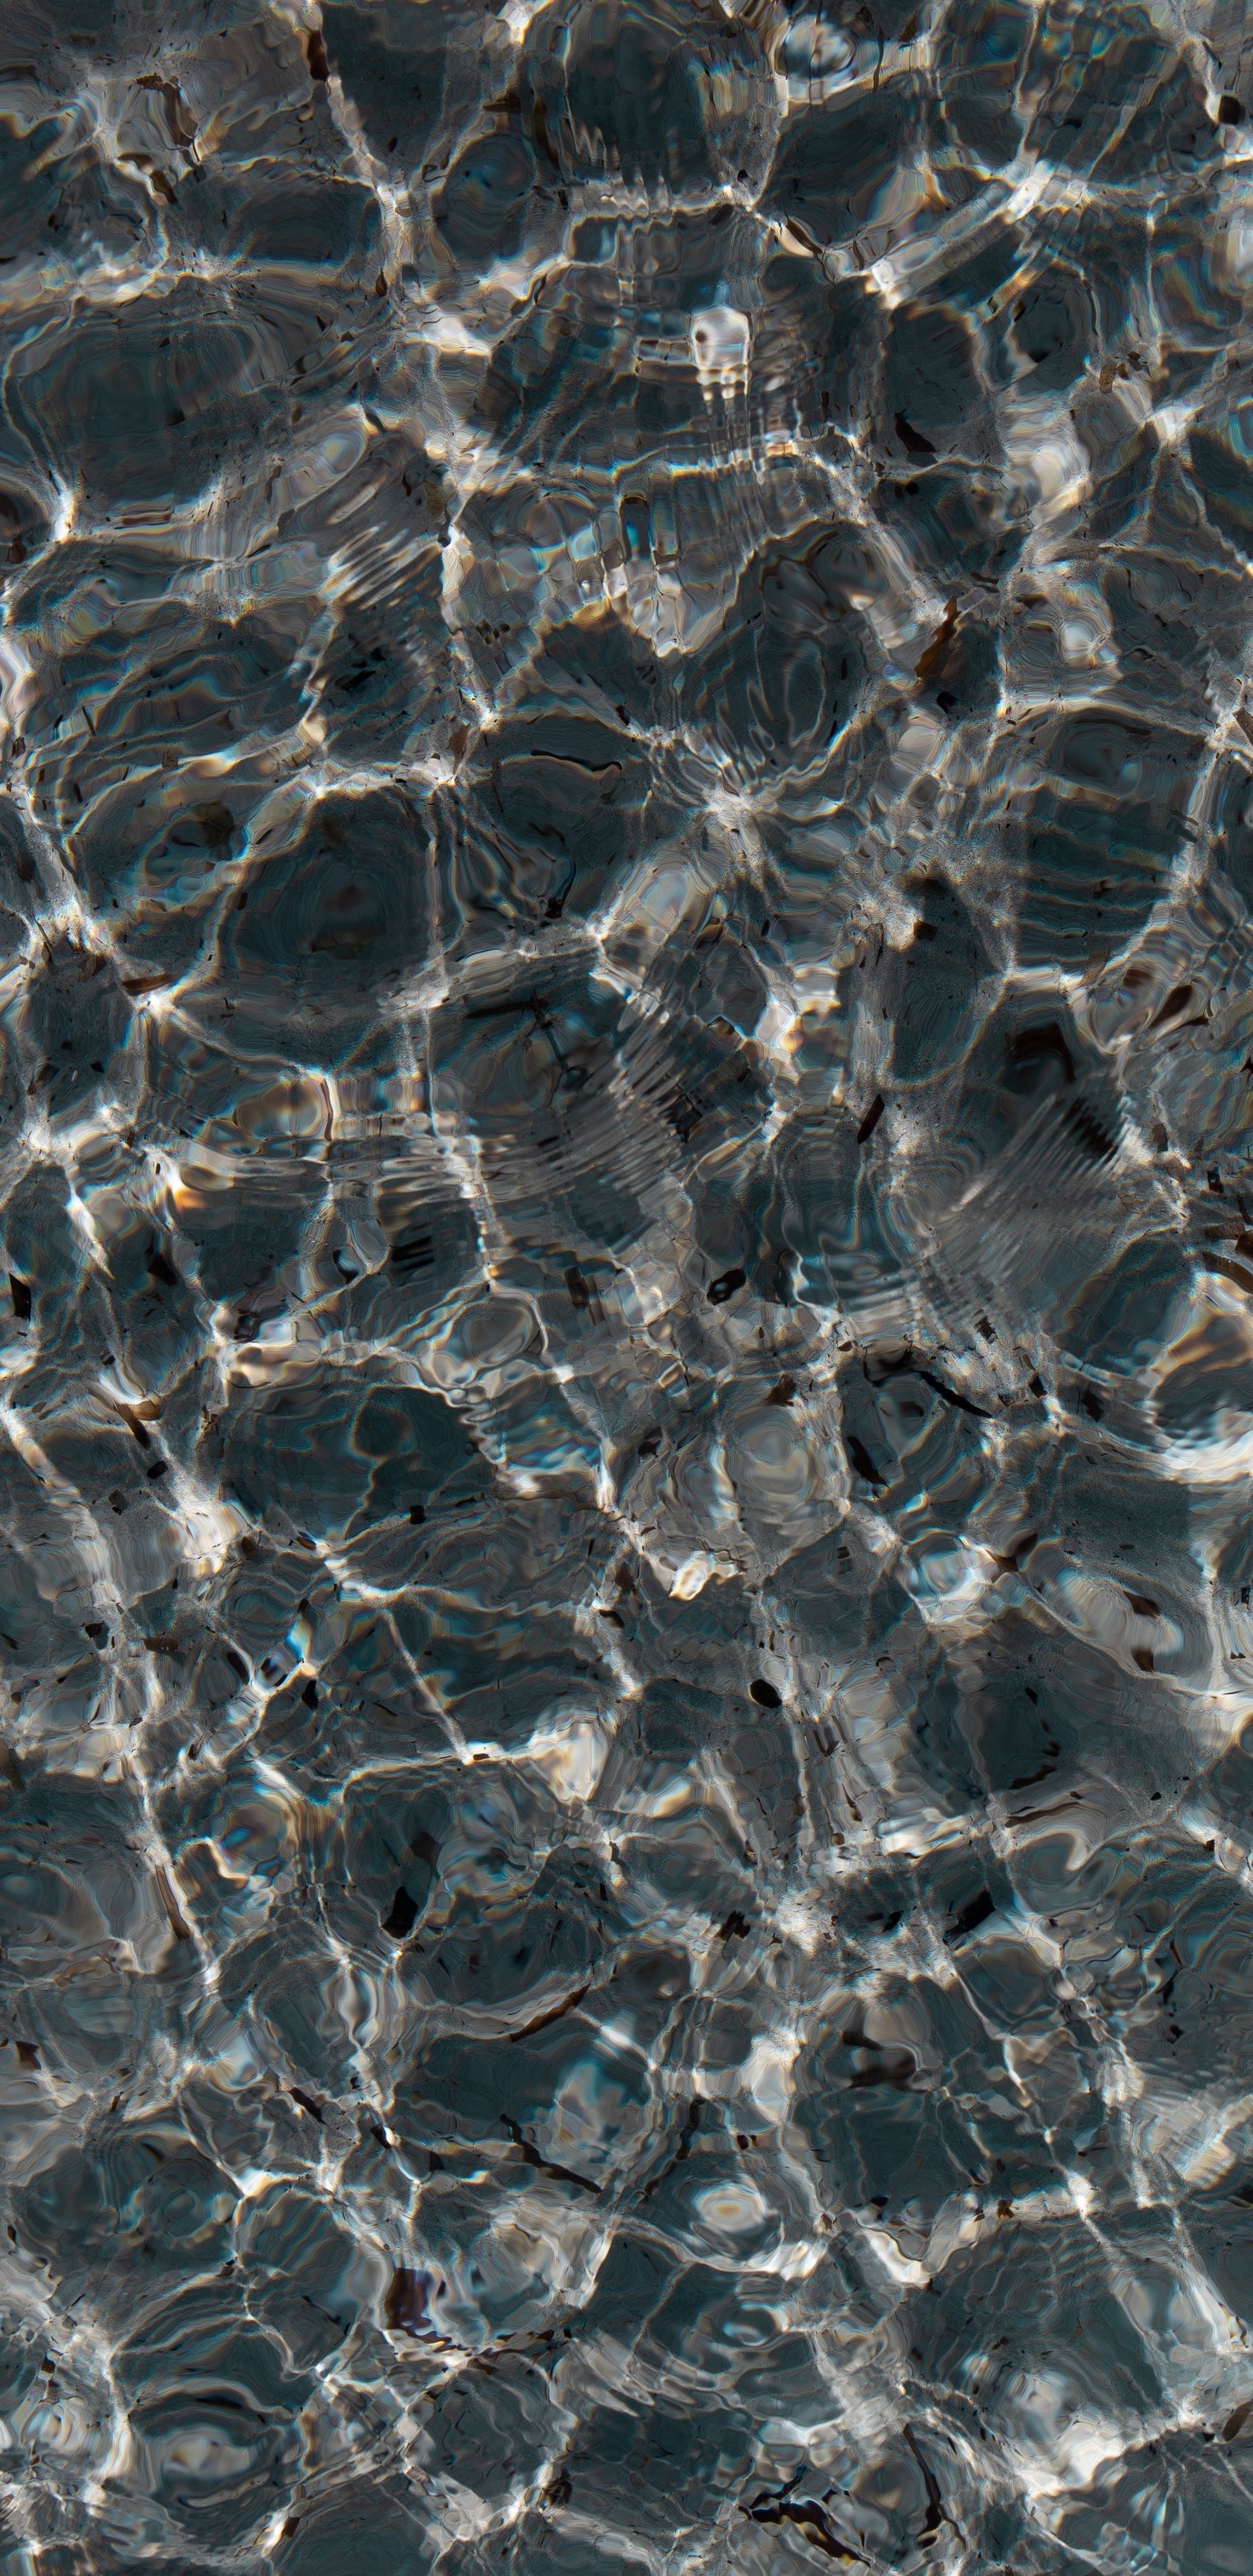 Éclaboussures D'eau Blanche et Bleue. Wallpaper in 1440x2960 Resolution